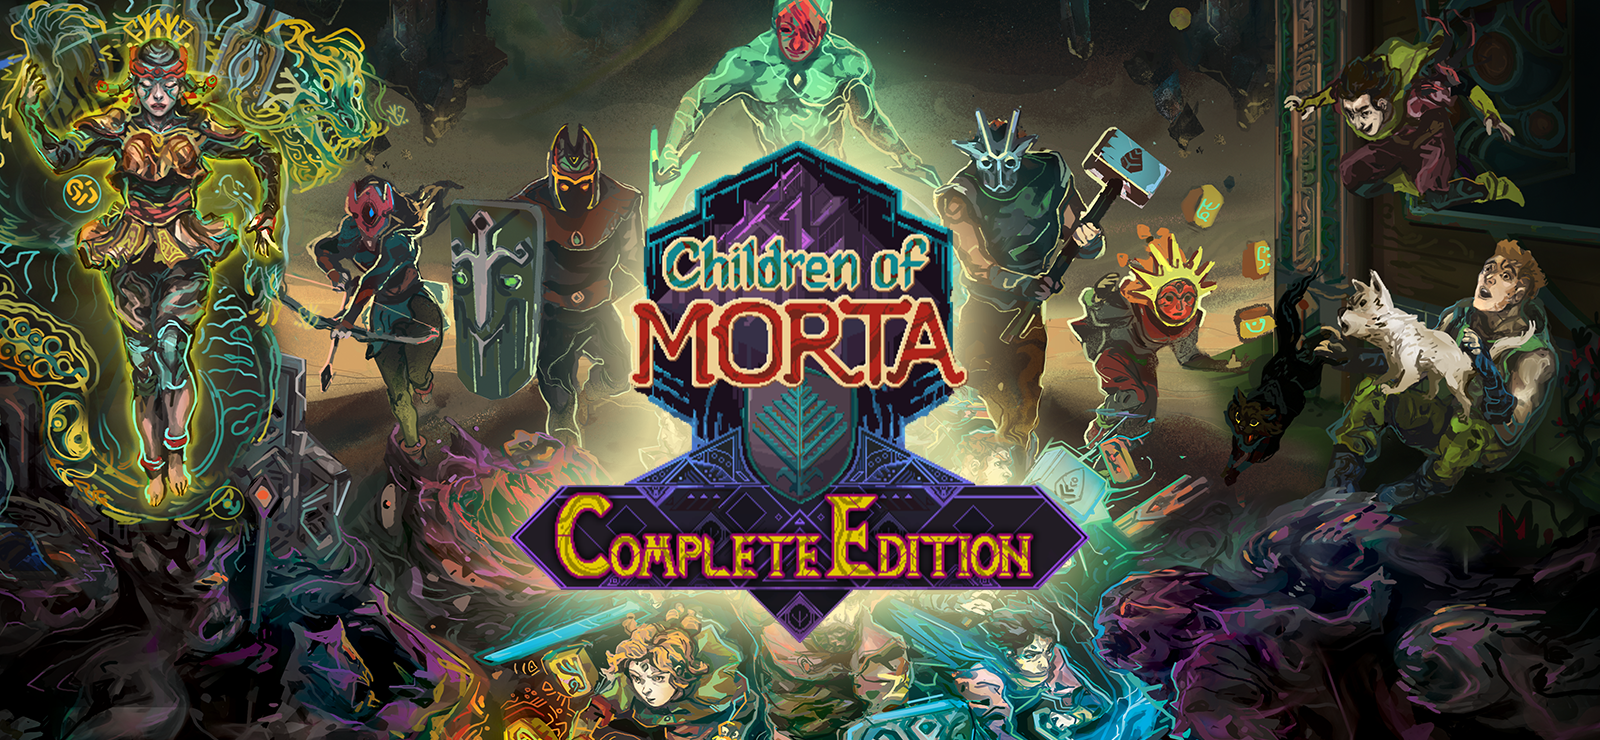 Children Of Morta: Complete Edition